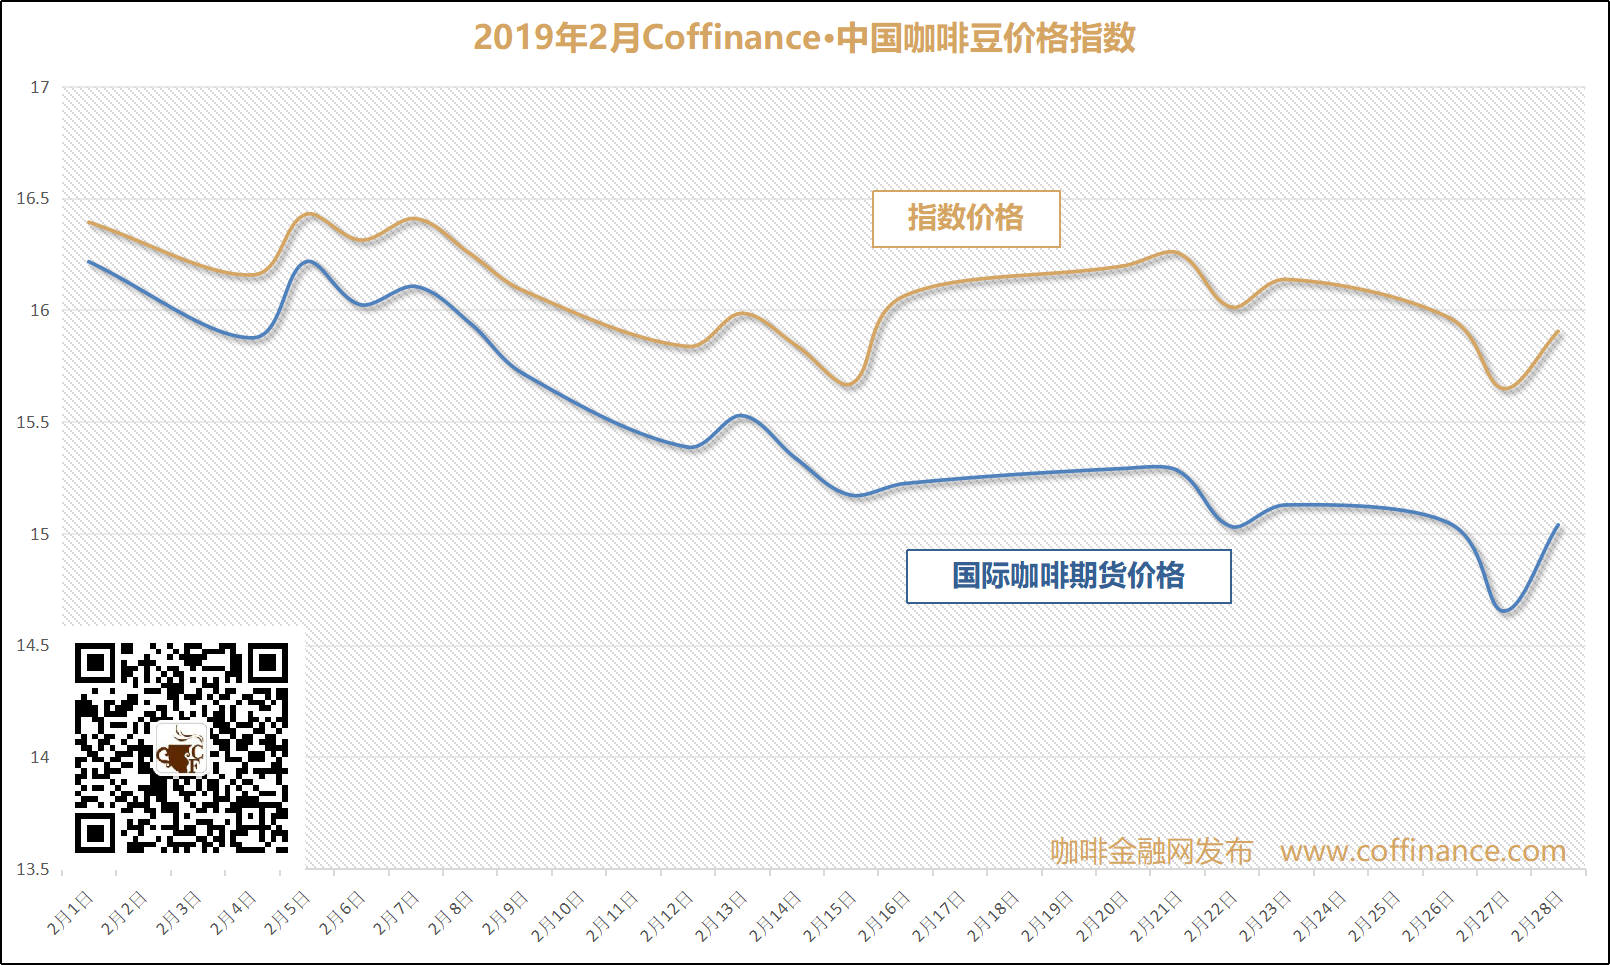 19年3月 Coffinance 中国咖啡豆价格指数2月中下旬与国际咖啡期货价格指数出现不同方向走势 咖啡金融网